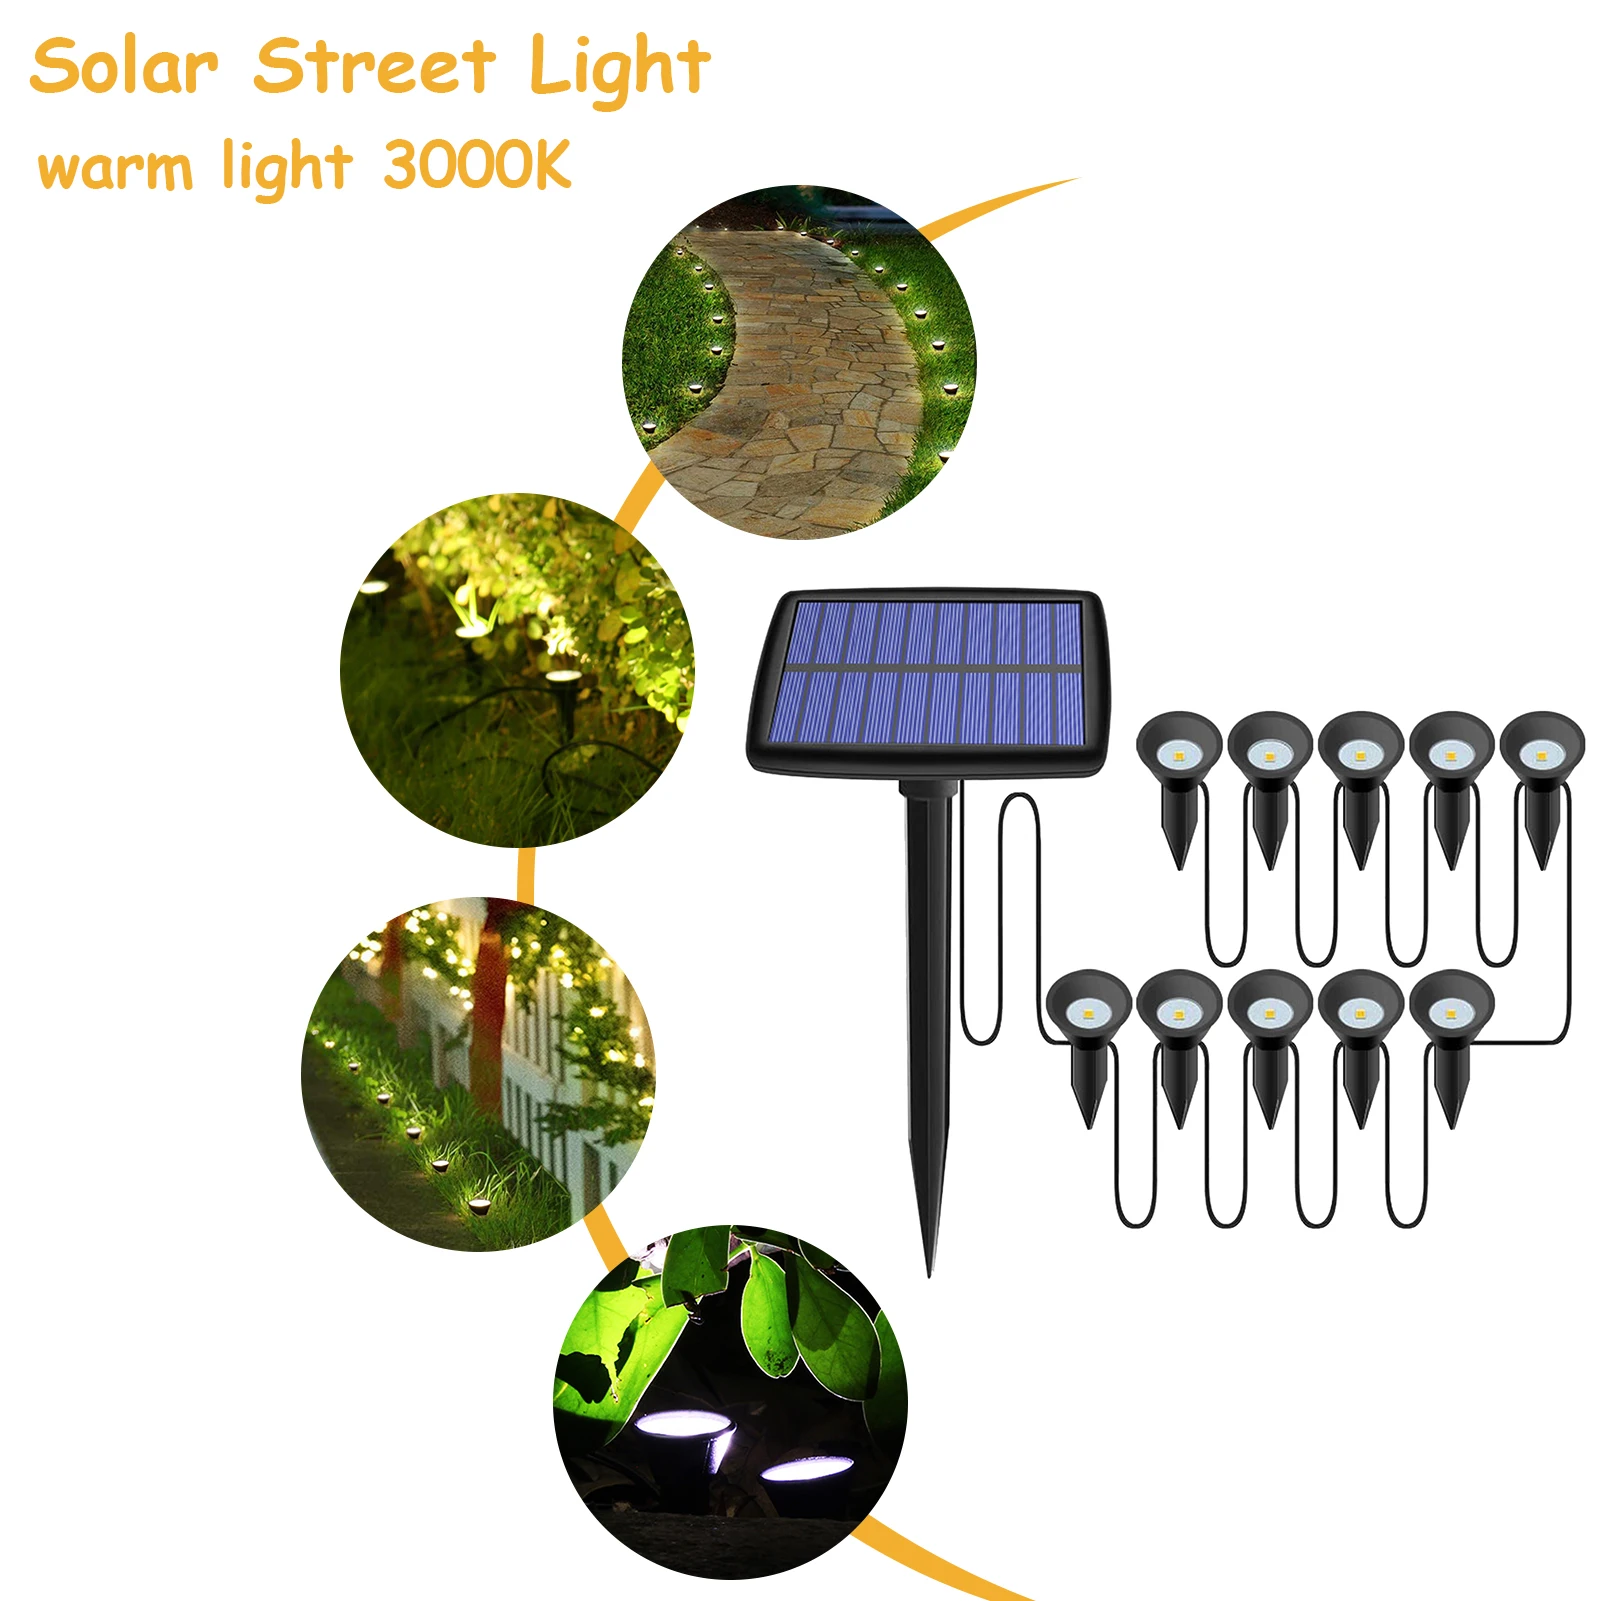 

Солнечный садовый прожектор 10 в 1, уличный водонепроницаемый ландшафт для дорожек с питанием от солнечной энергии, семейное украшение для дерева, внутреннего дворика, подъездной дорожки